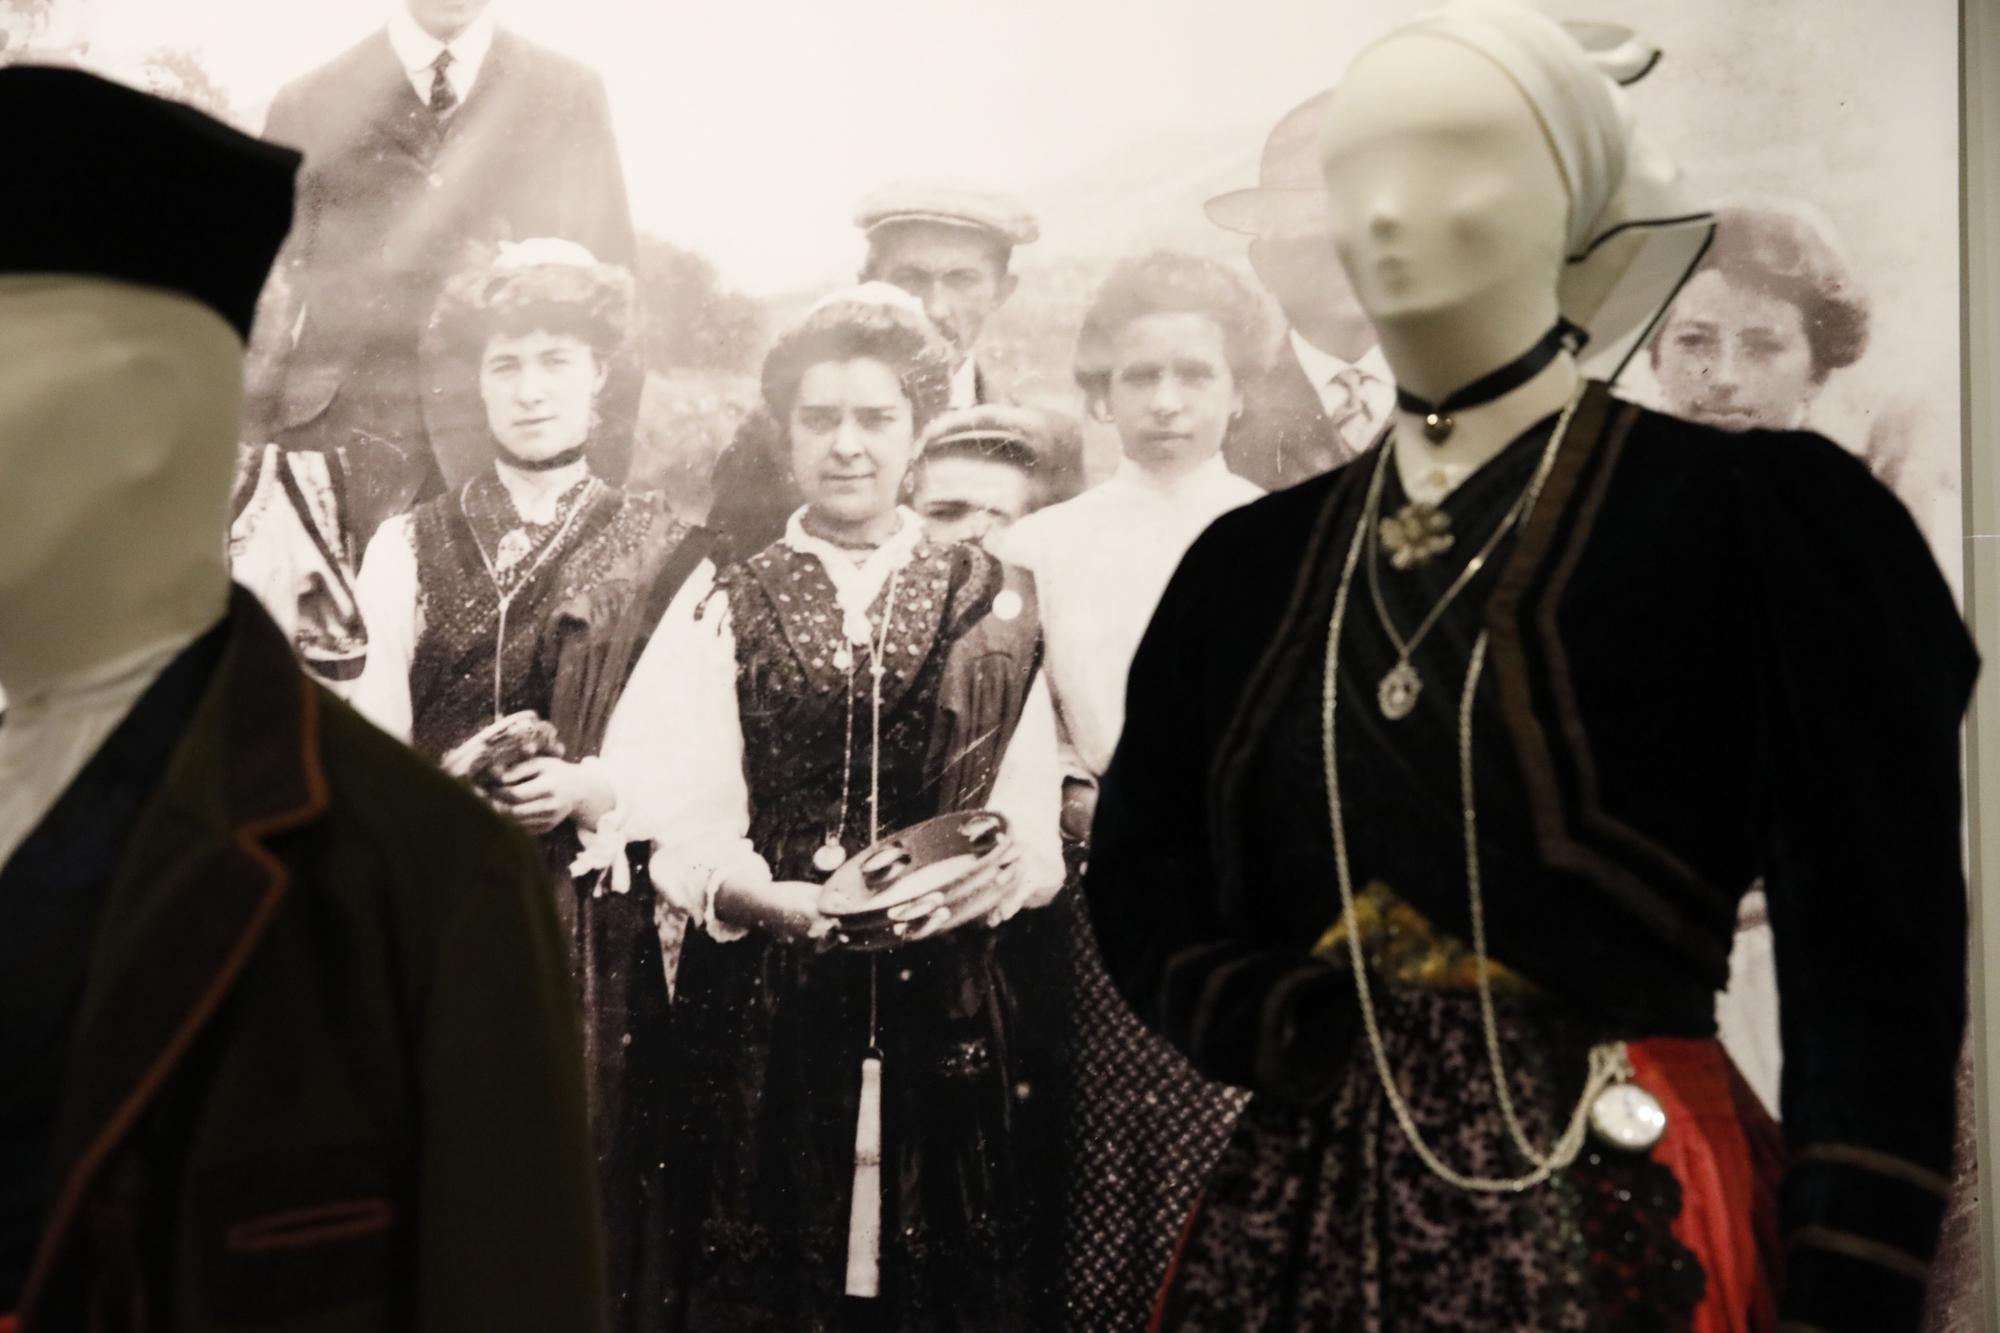 La historia de los trajes de asturianos en Llanes